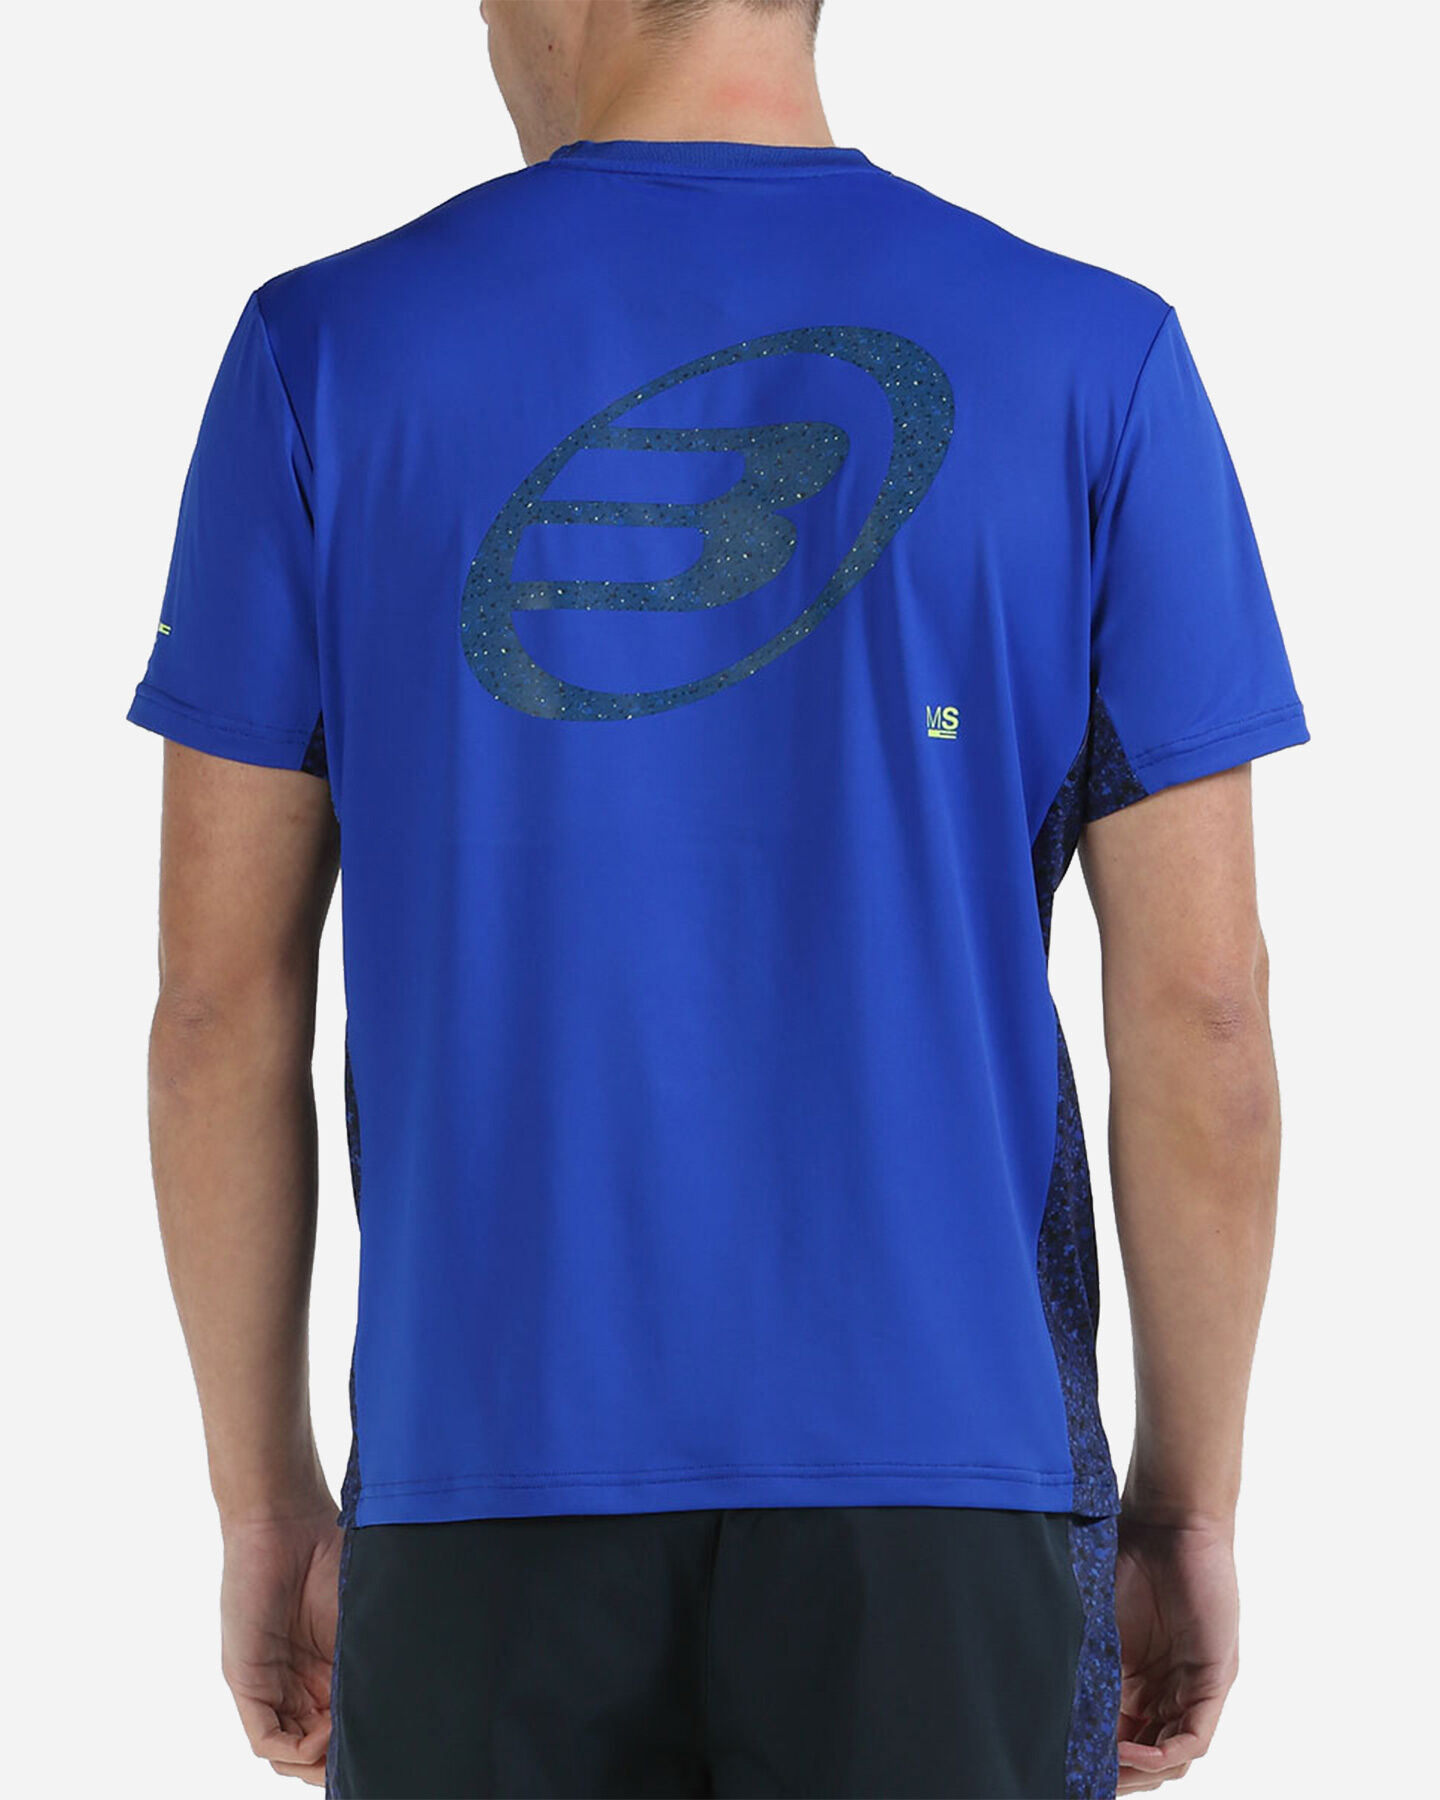  T-Shirt tennis BULLPADEL MIXTA M S5497726|712|S scatto 2